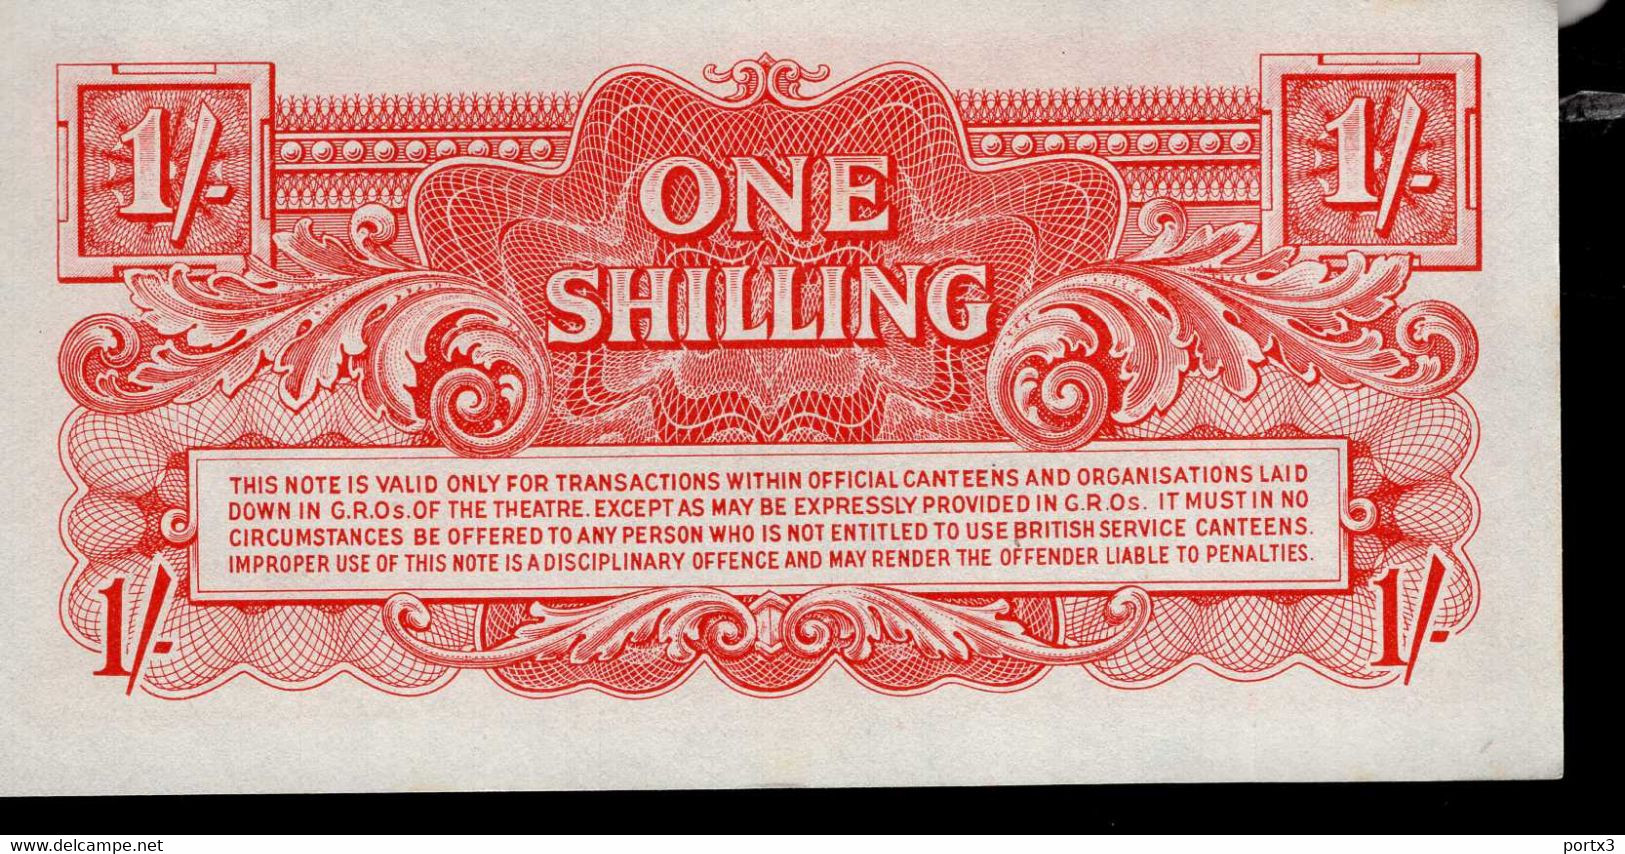 British Banknoten 5 Verschiedene With Ten Shilling BB 7 - British Armed Forces & Special Vouchers